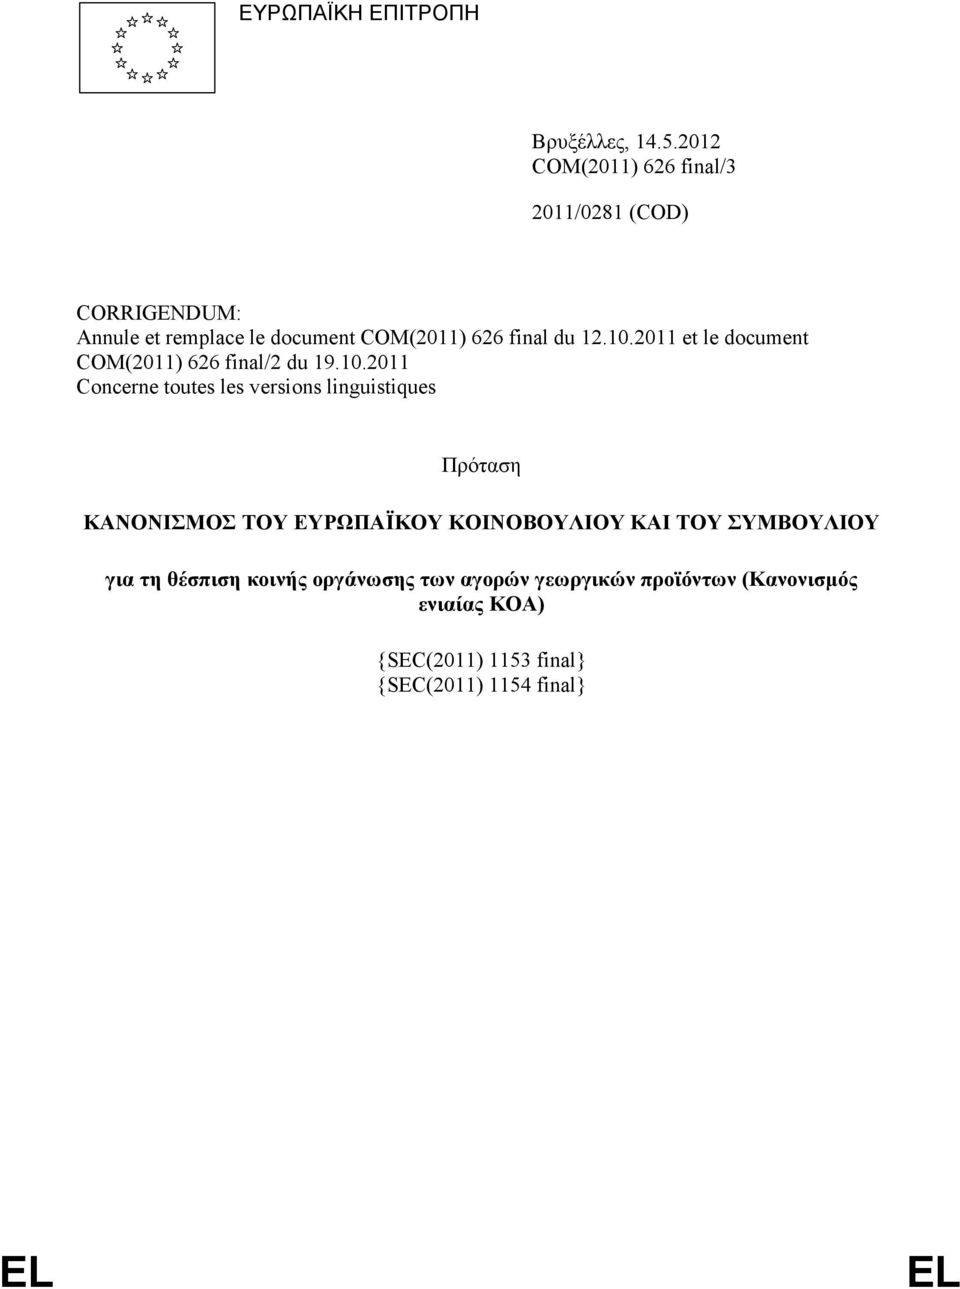 10.2011 et le document COM(2011) 626 final/2 du 19.10.2011 Concerne toutes les versions linguistiques Πρόταση